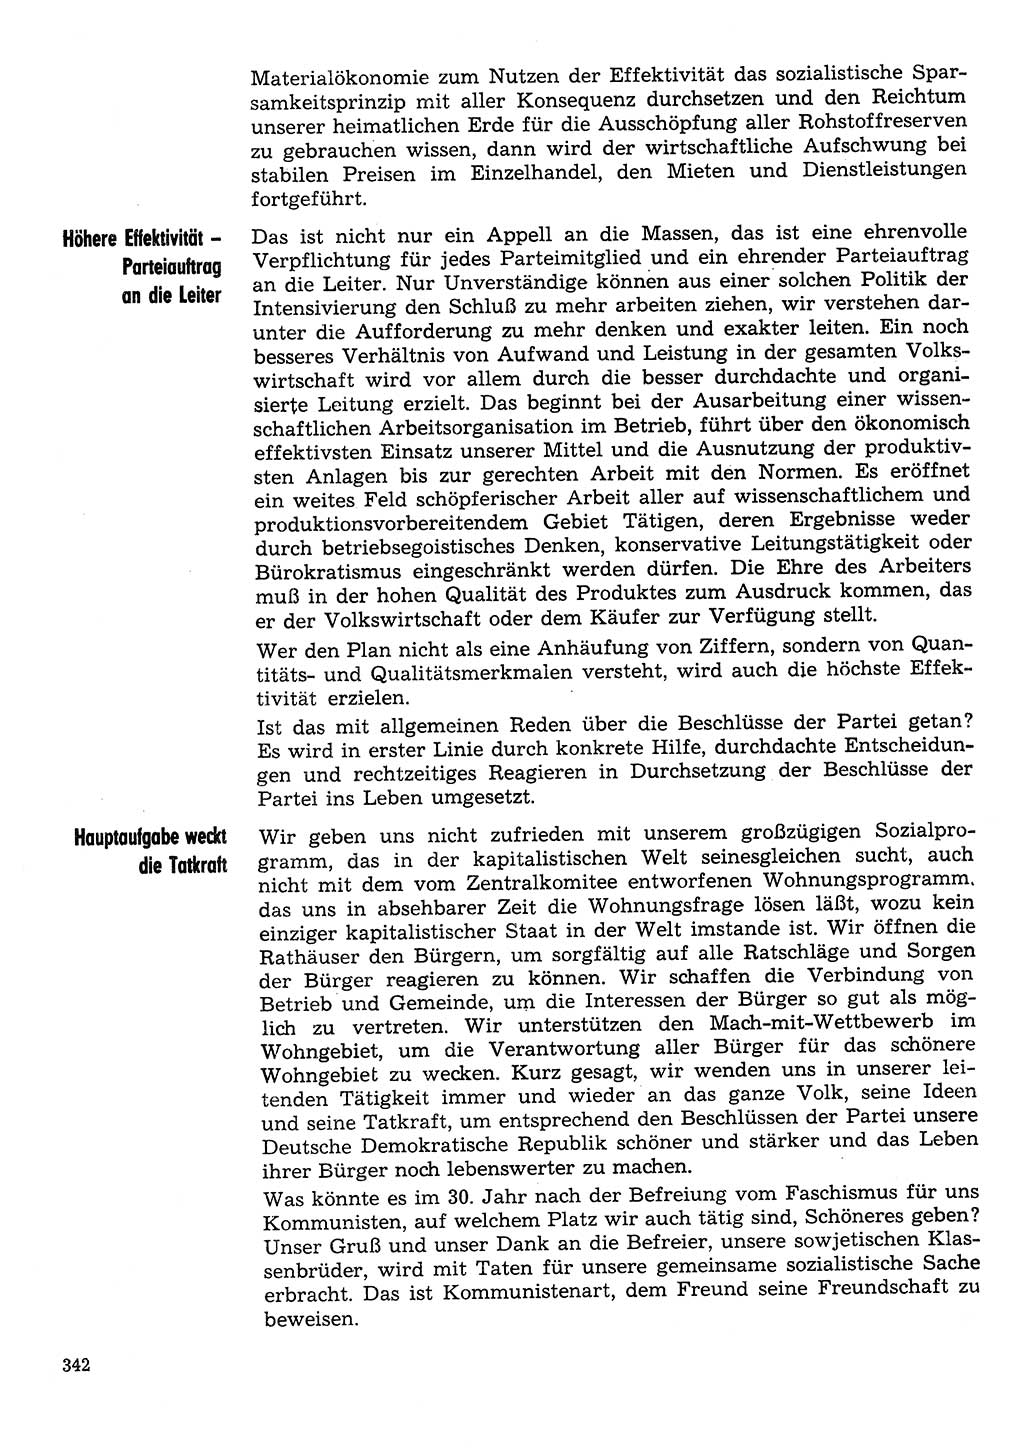 Neuer Weg (NW), Organ des Zentralkomitees (ZK) der SED (Sozialistische Einheitspartei Deutschlands) für Fragen des Parteilebens, 30. Jahrgang [Deutsche Demokratische Republik (DDR)] 1975, Seite 342 (NW ZK SED DDR 1975, S. 342)